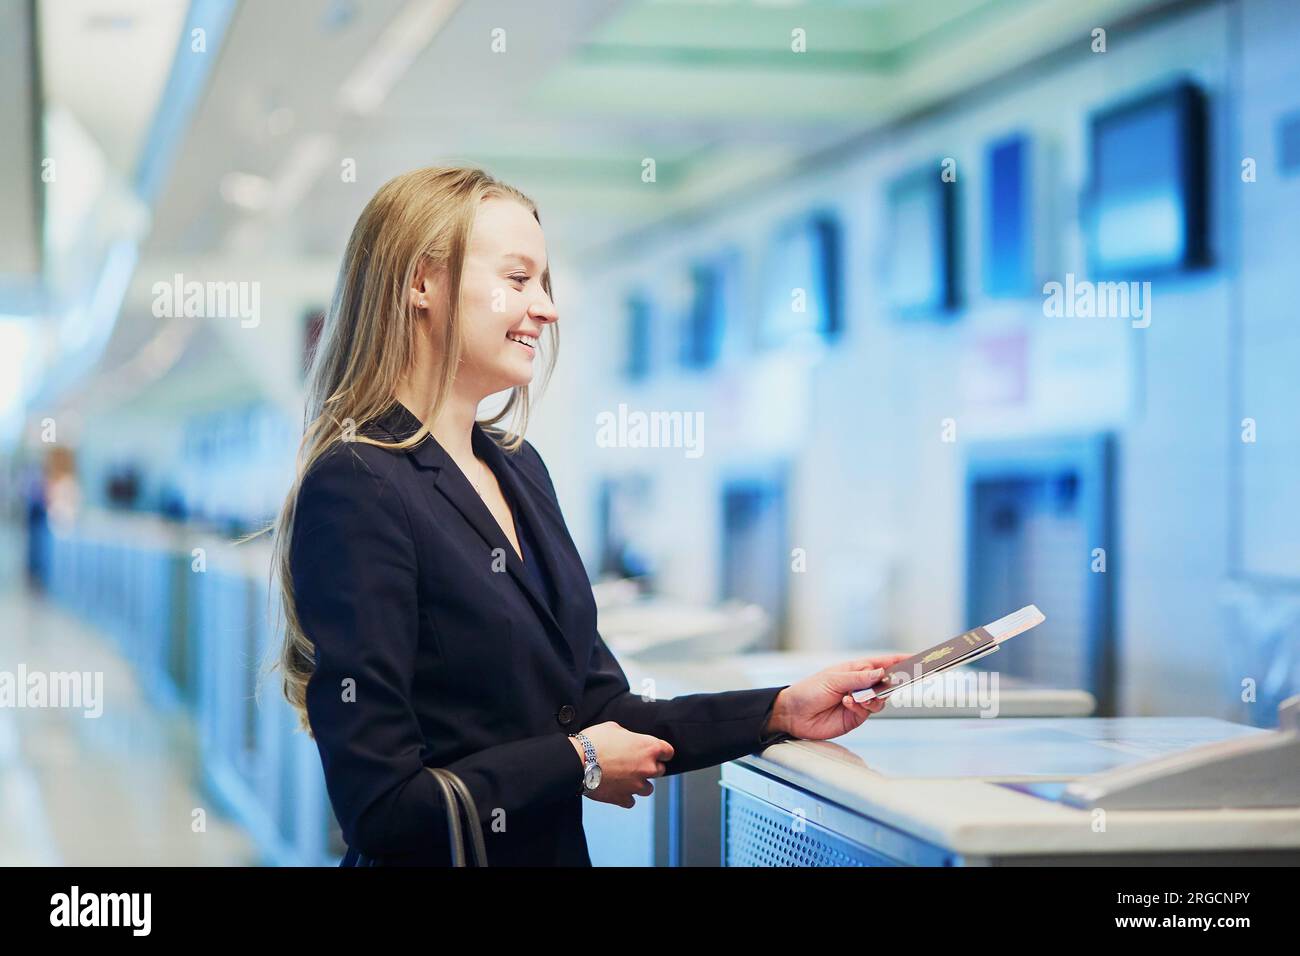 Giovane donna d'affari all'aeroporto internazionale al banco del check-in, che consegna il passaporto a un ufficiale e aspetta la sua carta d'imbarco Foto Stock